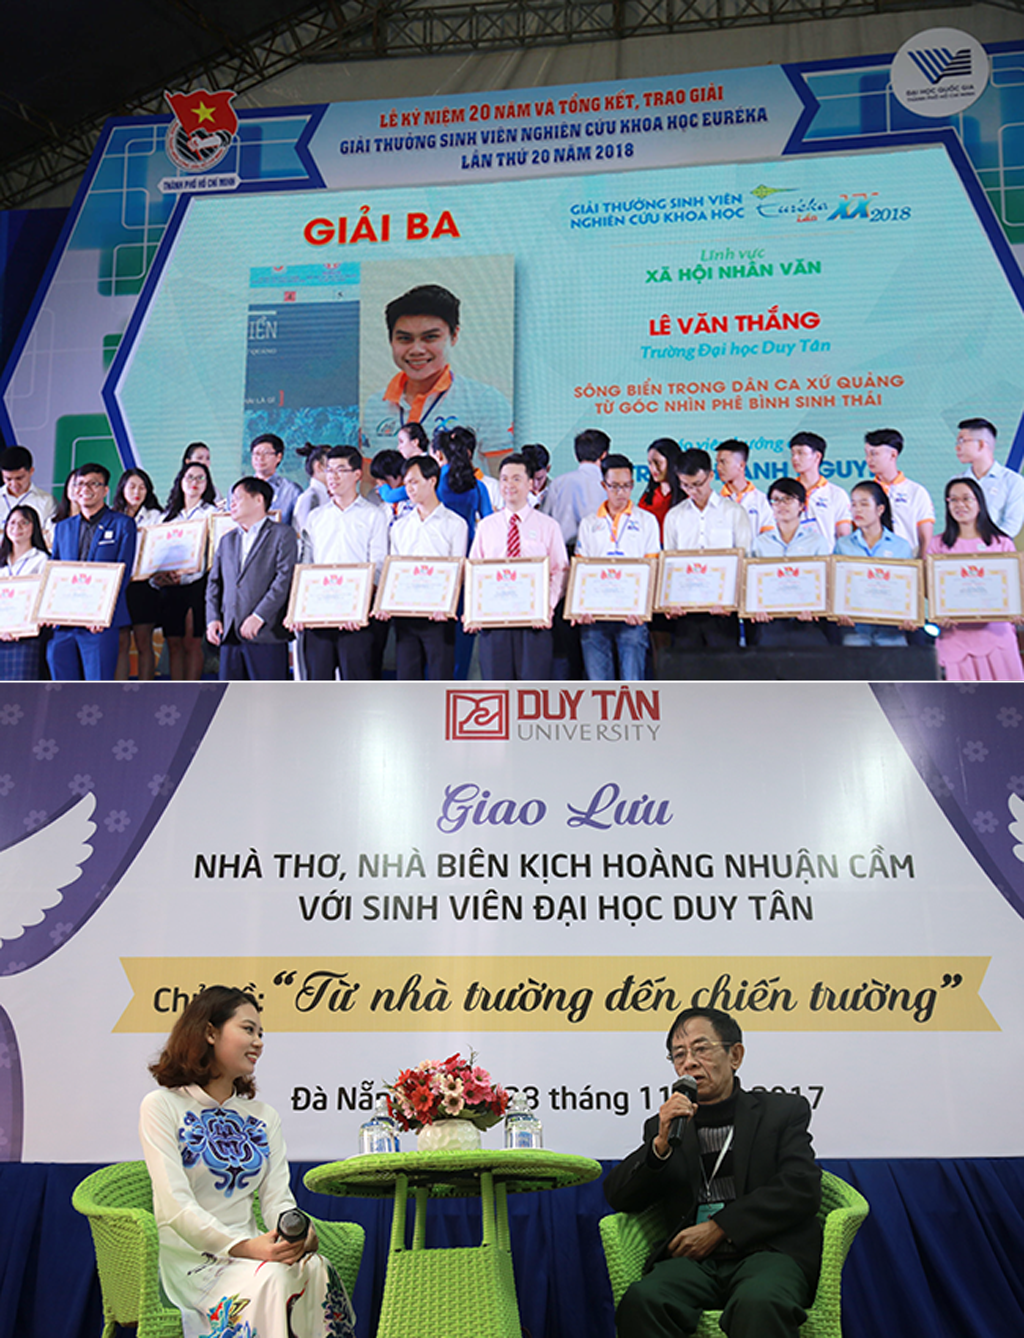 Sinh viên Duy Tân giành giải Ba giải thưởng Euréka 2018 (ảnh trên) và Nhà Biên kịch Hoàng Nhuận Cầm giao lưu với sinh viên Duy Tân (ảnh dưới)